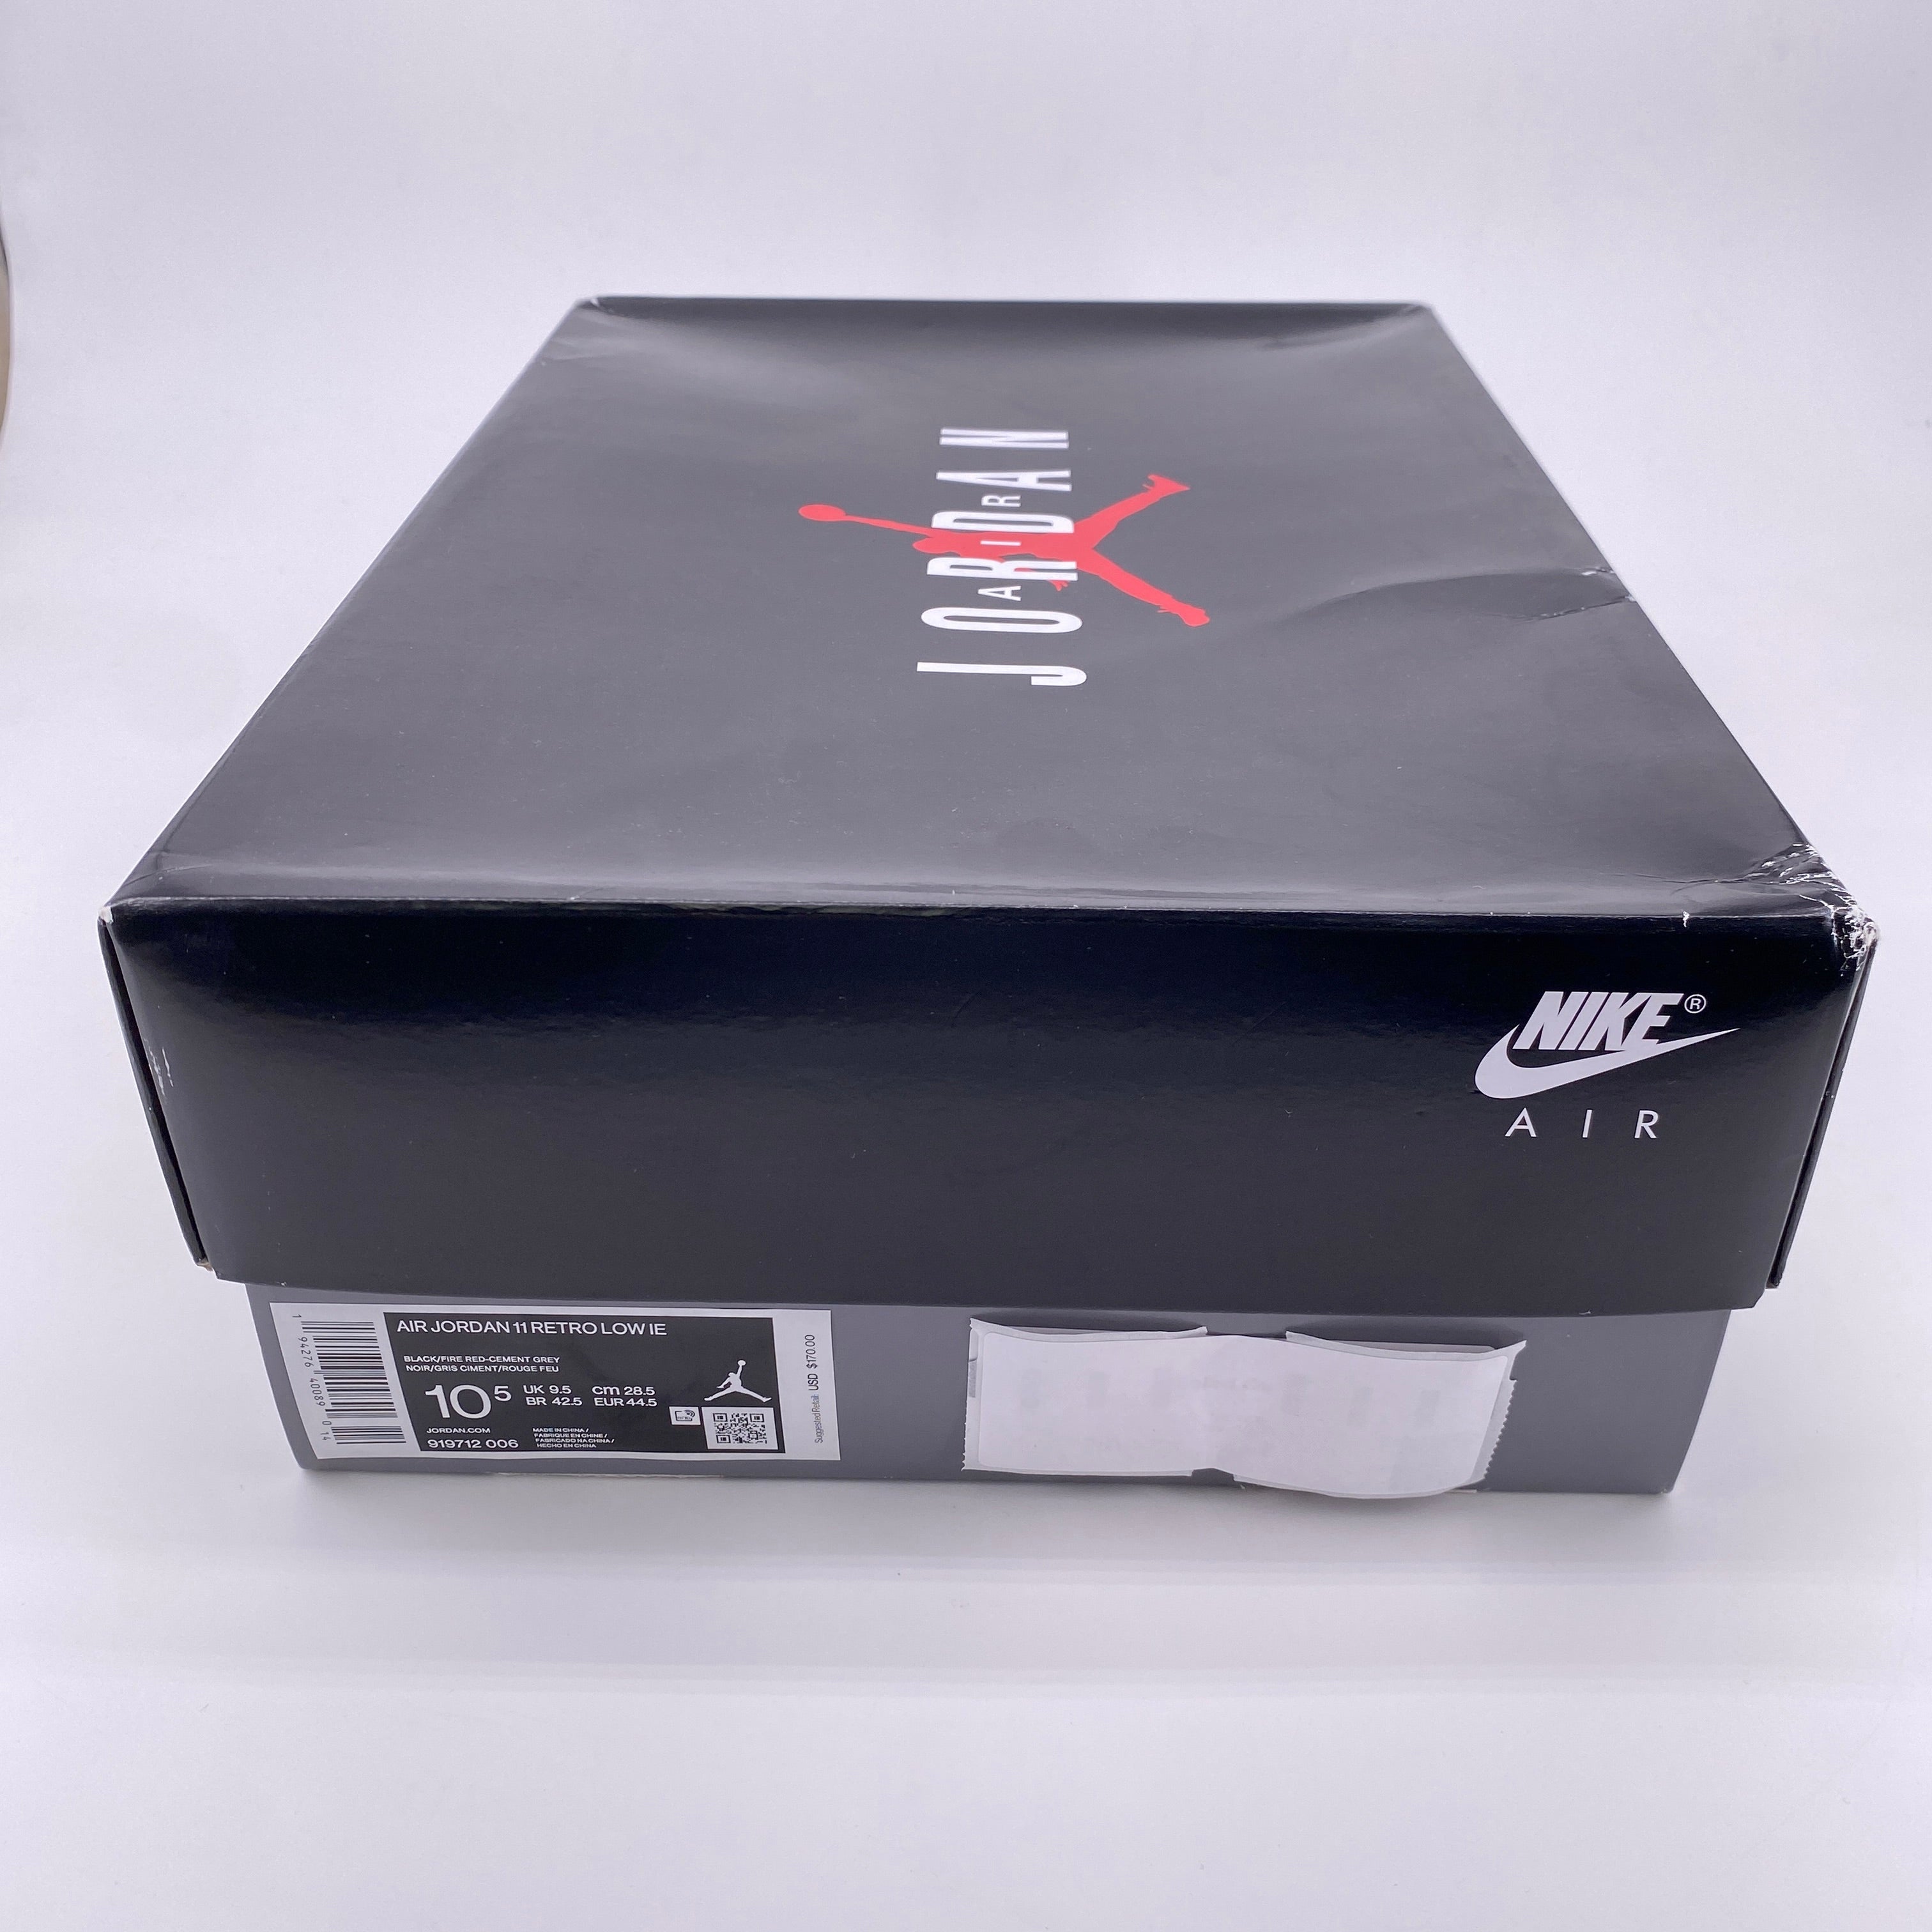 Air Jordan 11 Retro Low IE "Black Cement" 2020 New Size 10.5